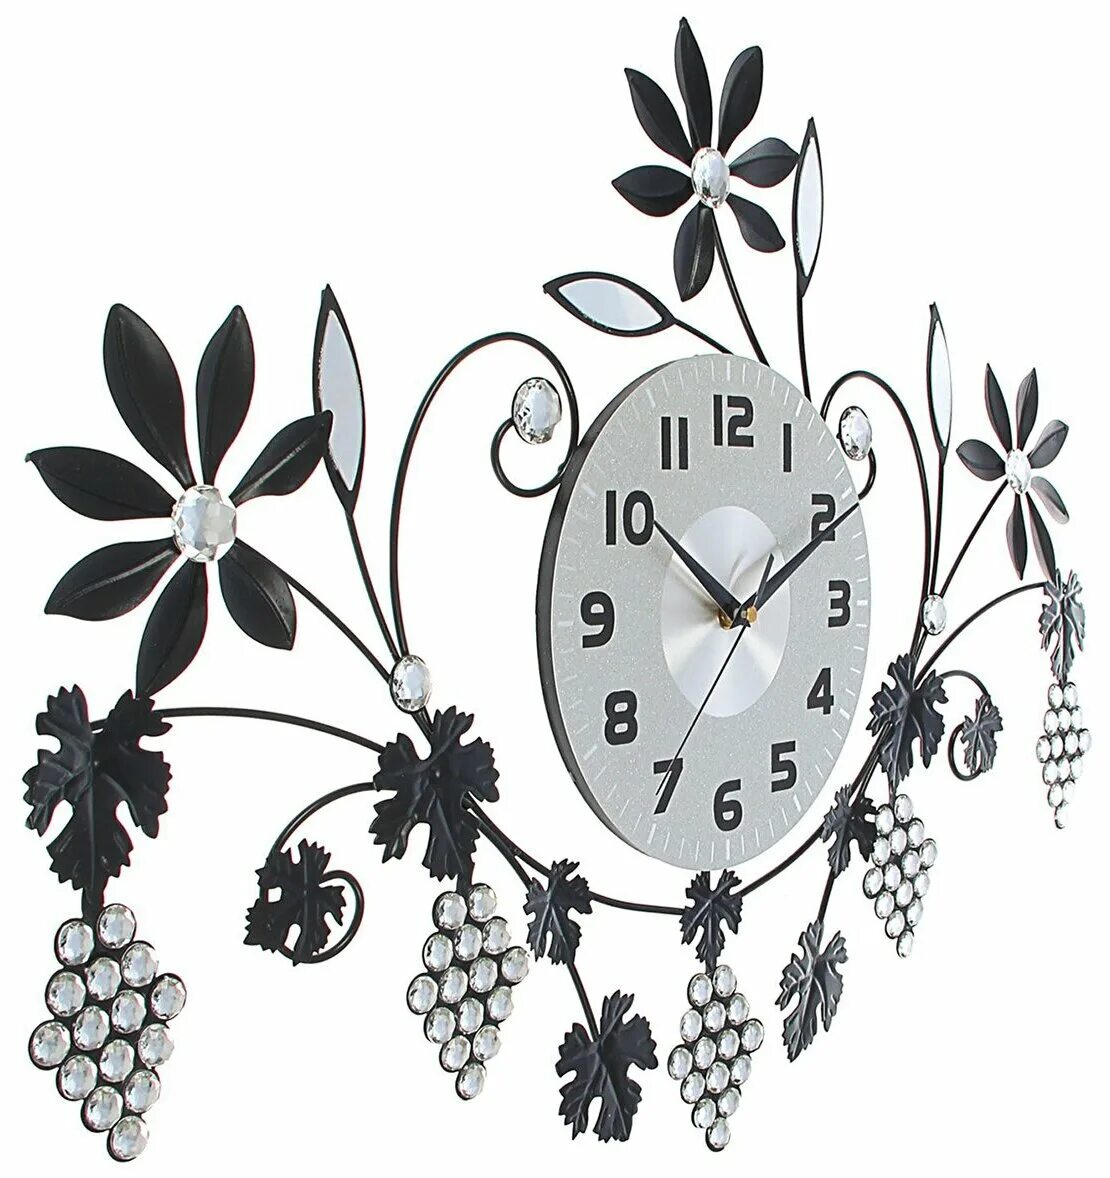 Часы настенные ажурные. Цветы (часы настенные). Оригинальные часы на кухню. Часы настенные в виде цветка.